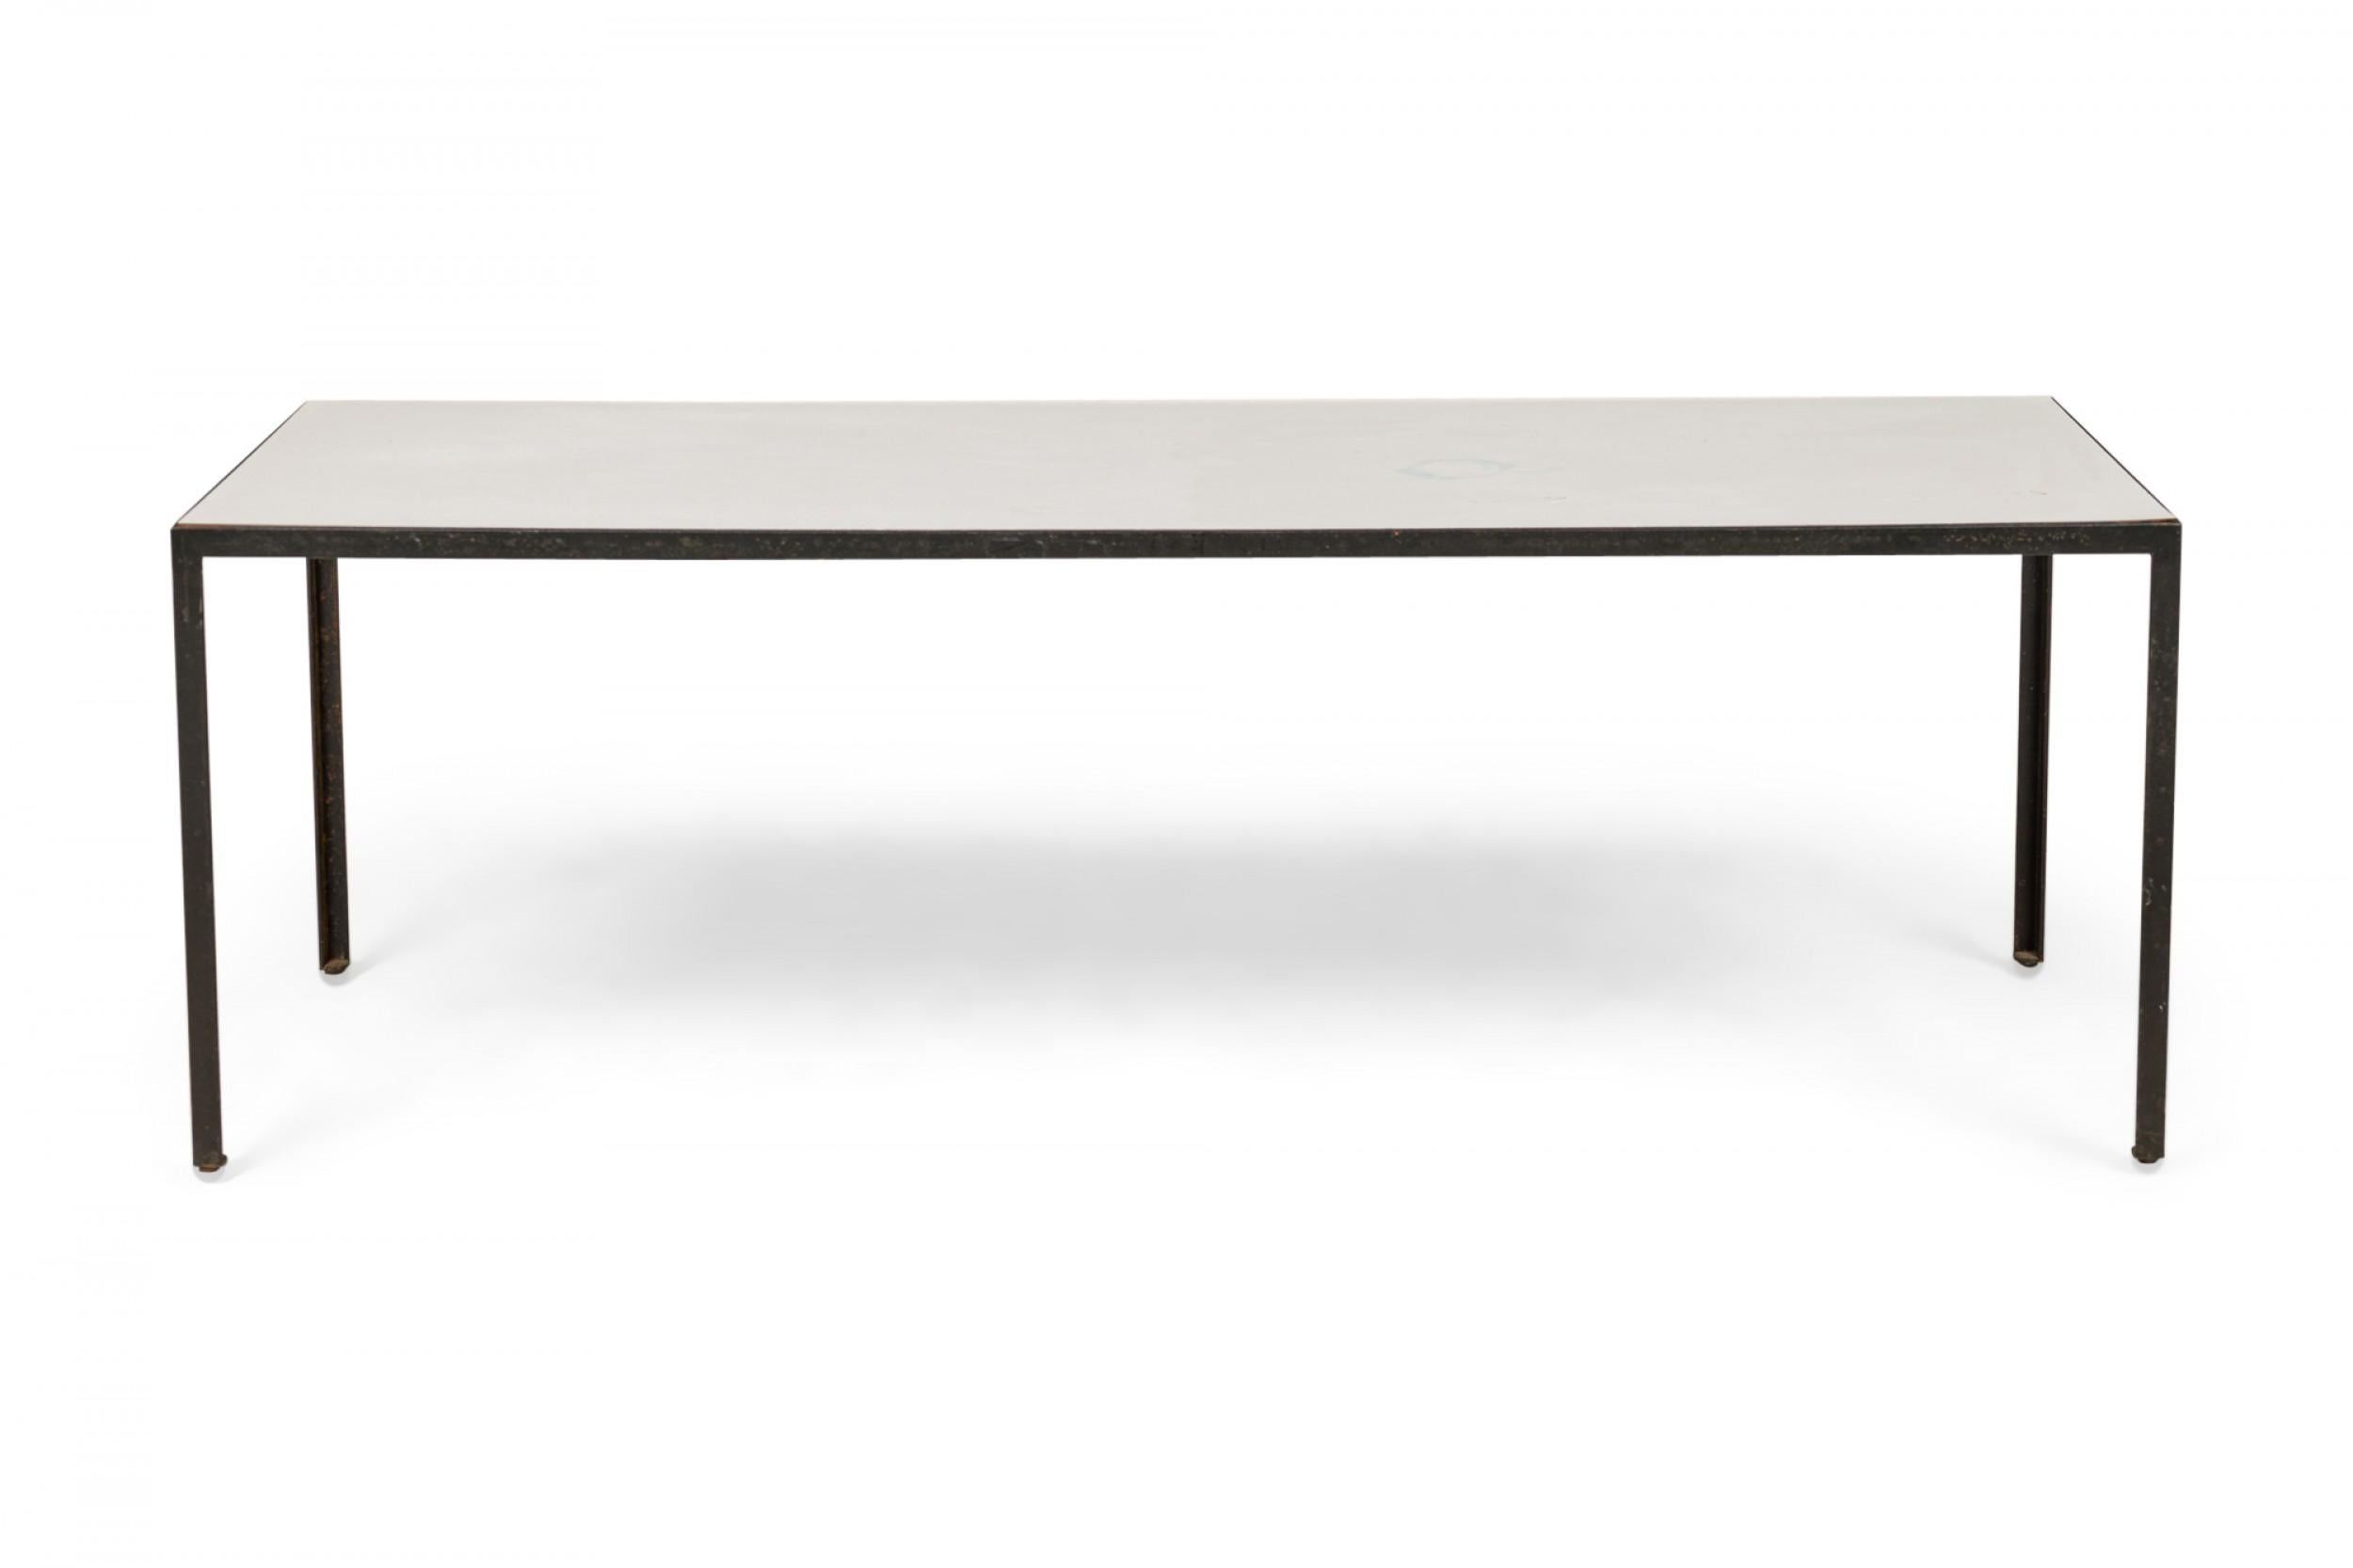 Table basse / cocktail rectangulaire de style américain Mid-Century avec un plateau en stratifié blanc reposant sur une base minimaliste en acier noir. (GEORGE NELSON / HERMAN MILLER)
